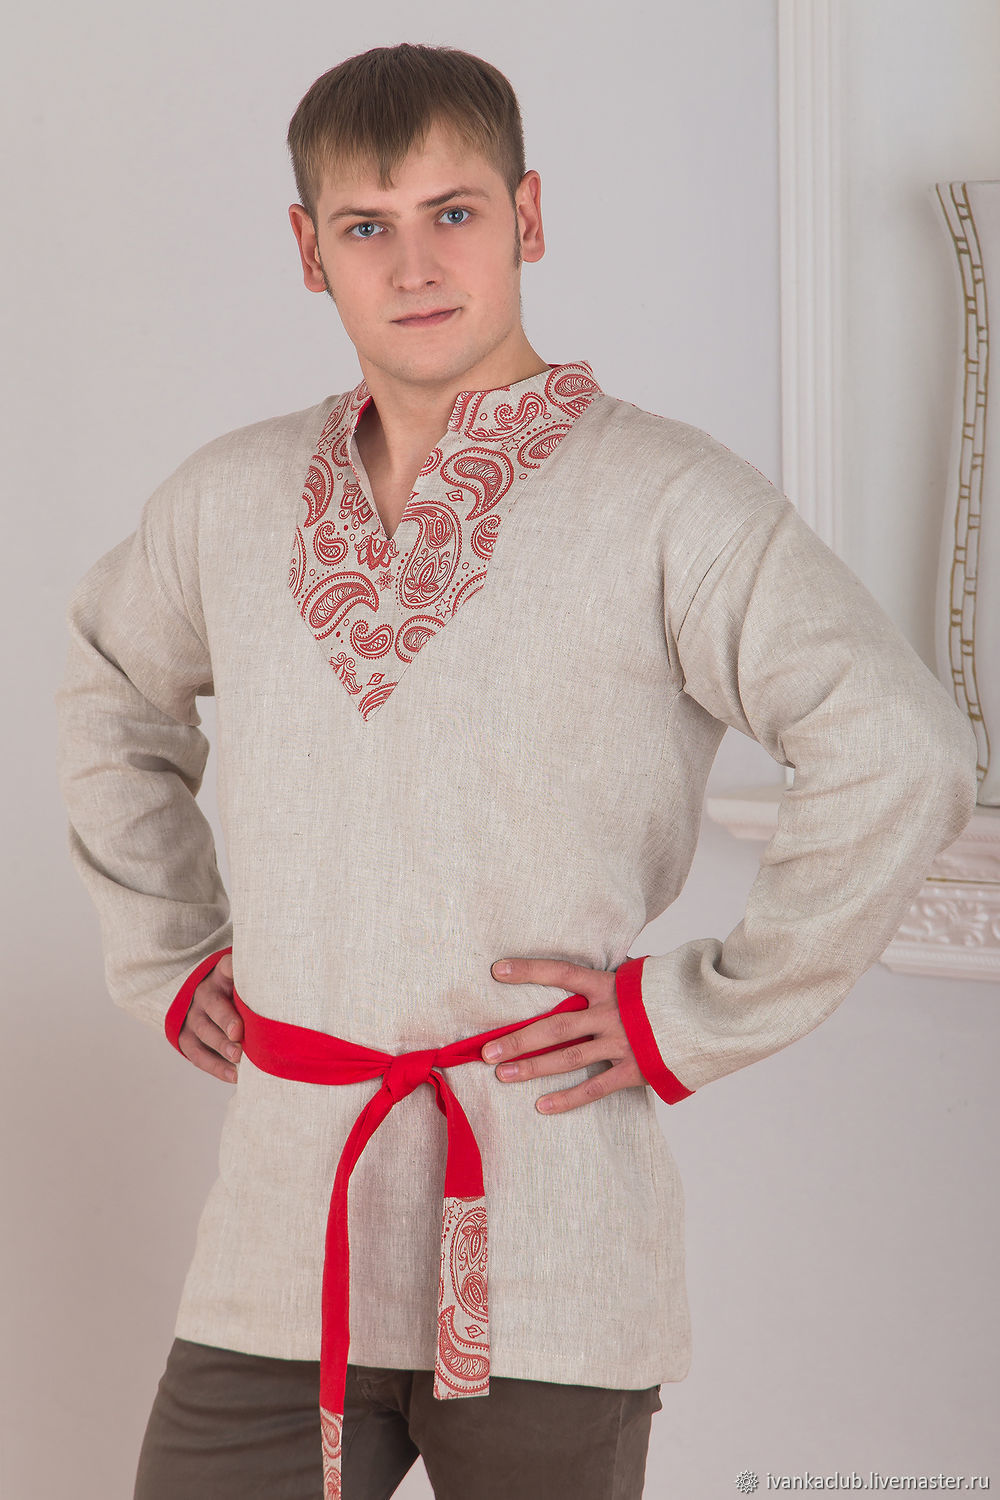 Русская мужская одежда